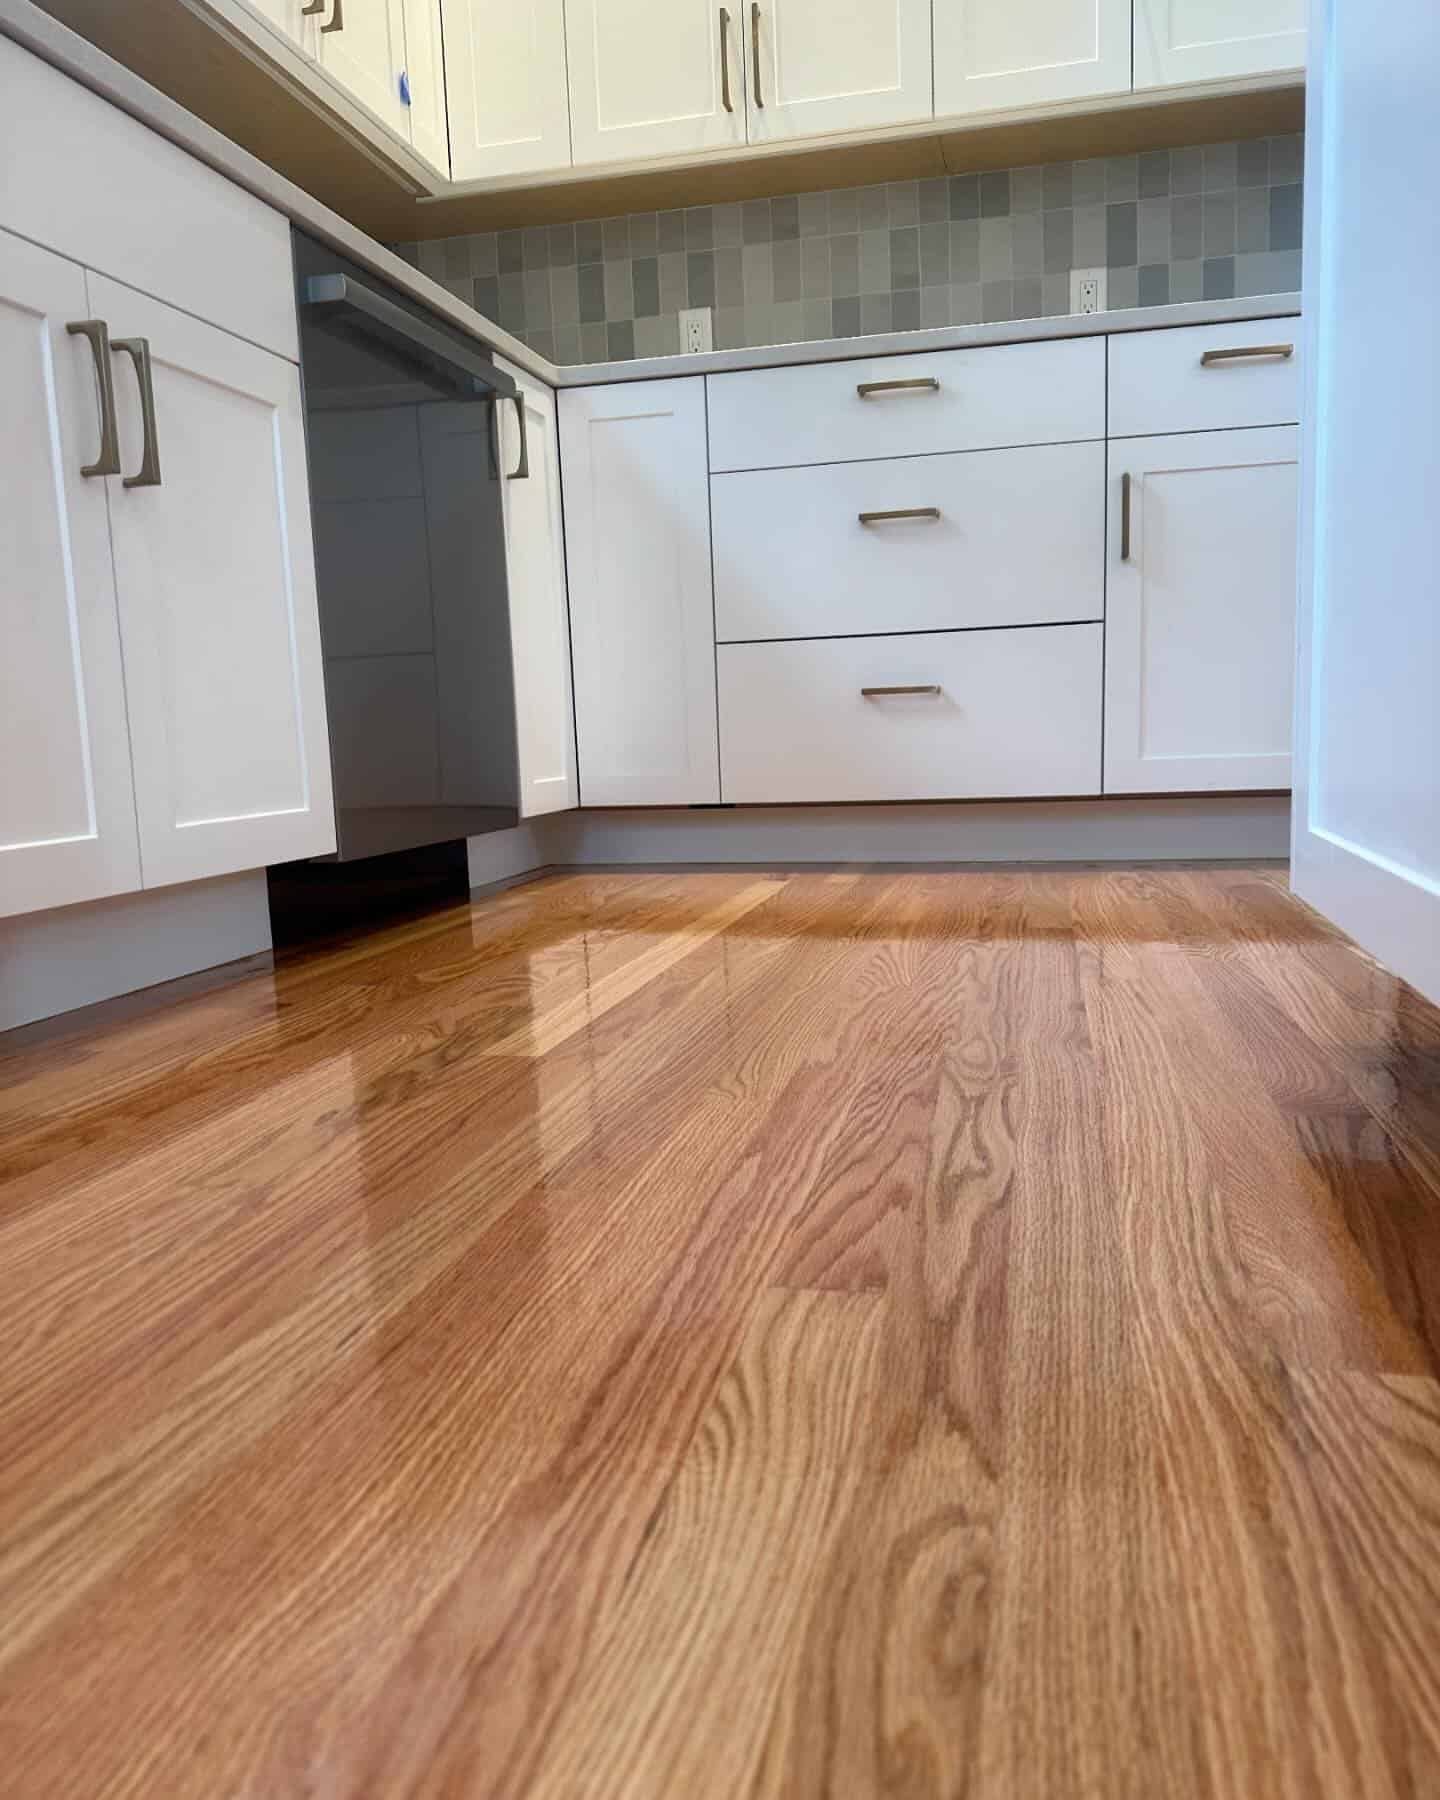 refinished hardwood floors in a kitchen - Eco Floor Sanding